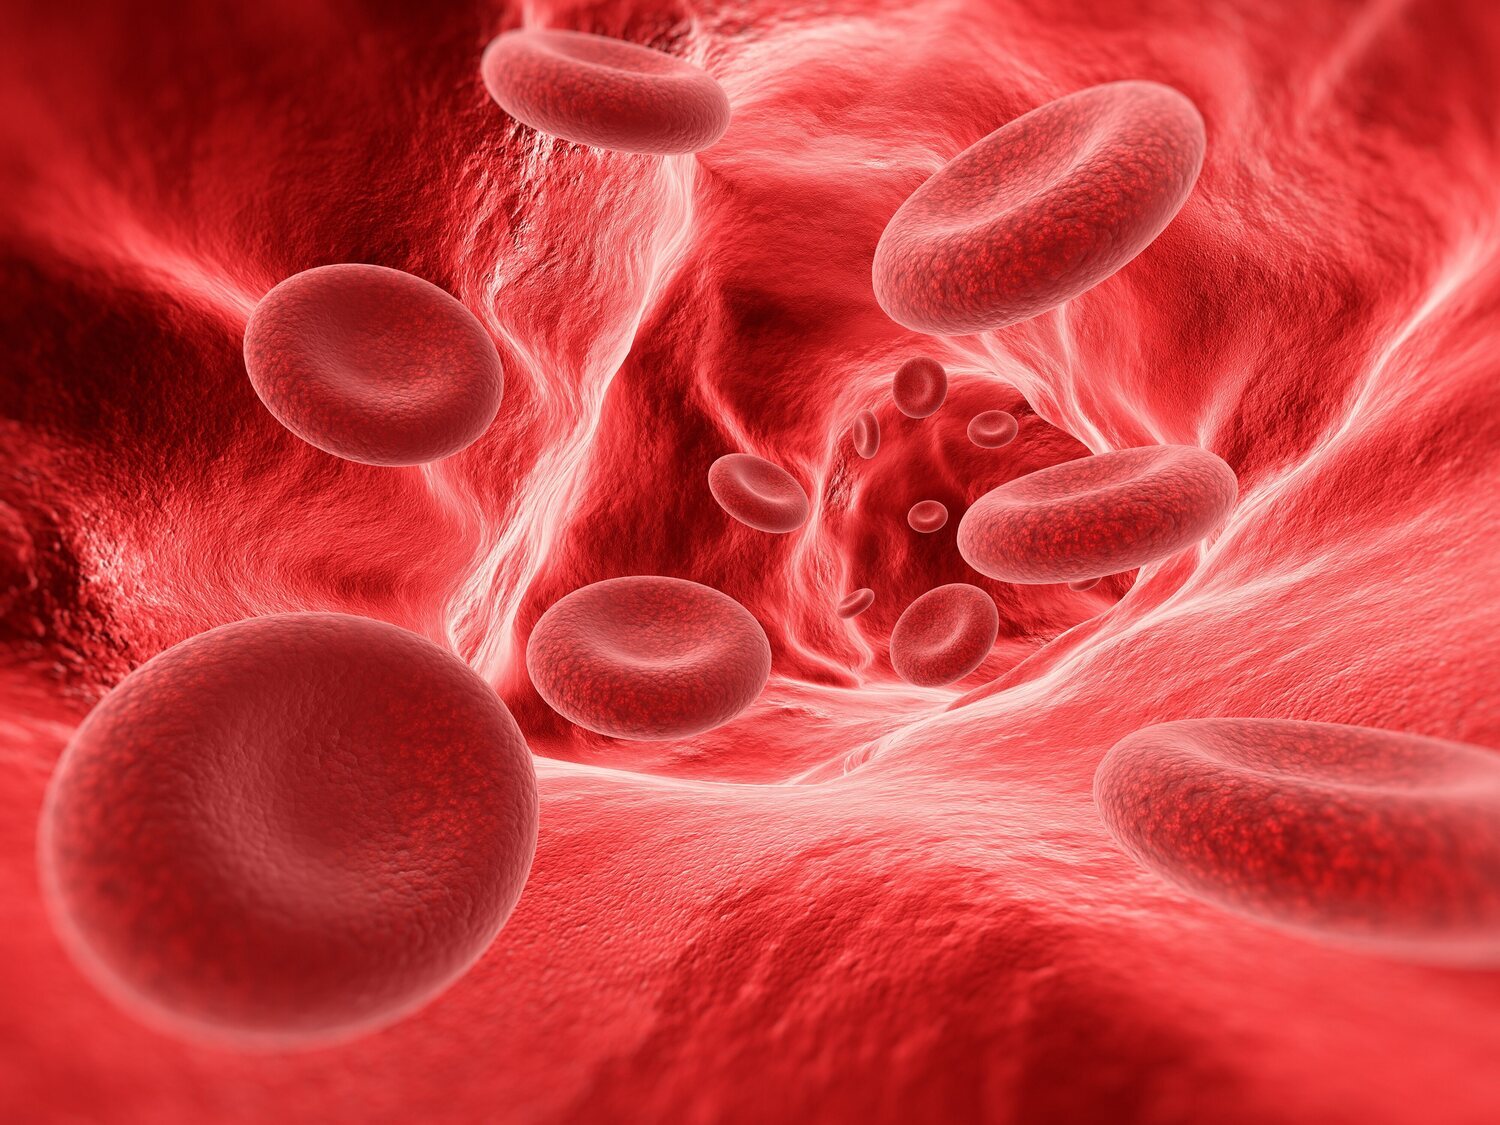 Vivir con hemofilia: "Sufrimos una limitación principalmente de movilidad"